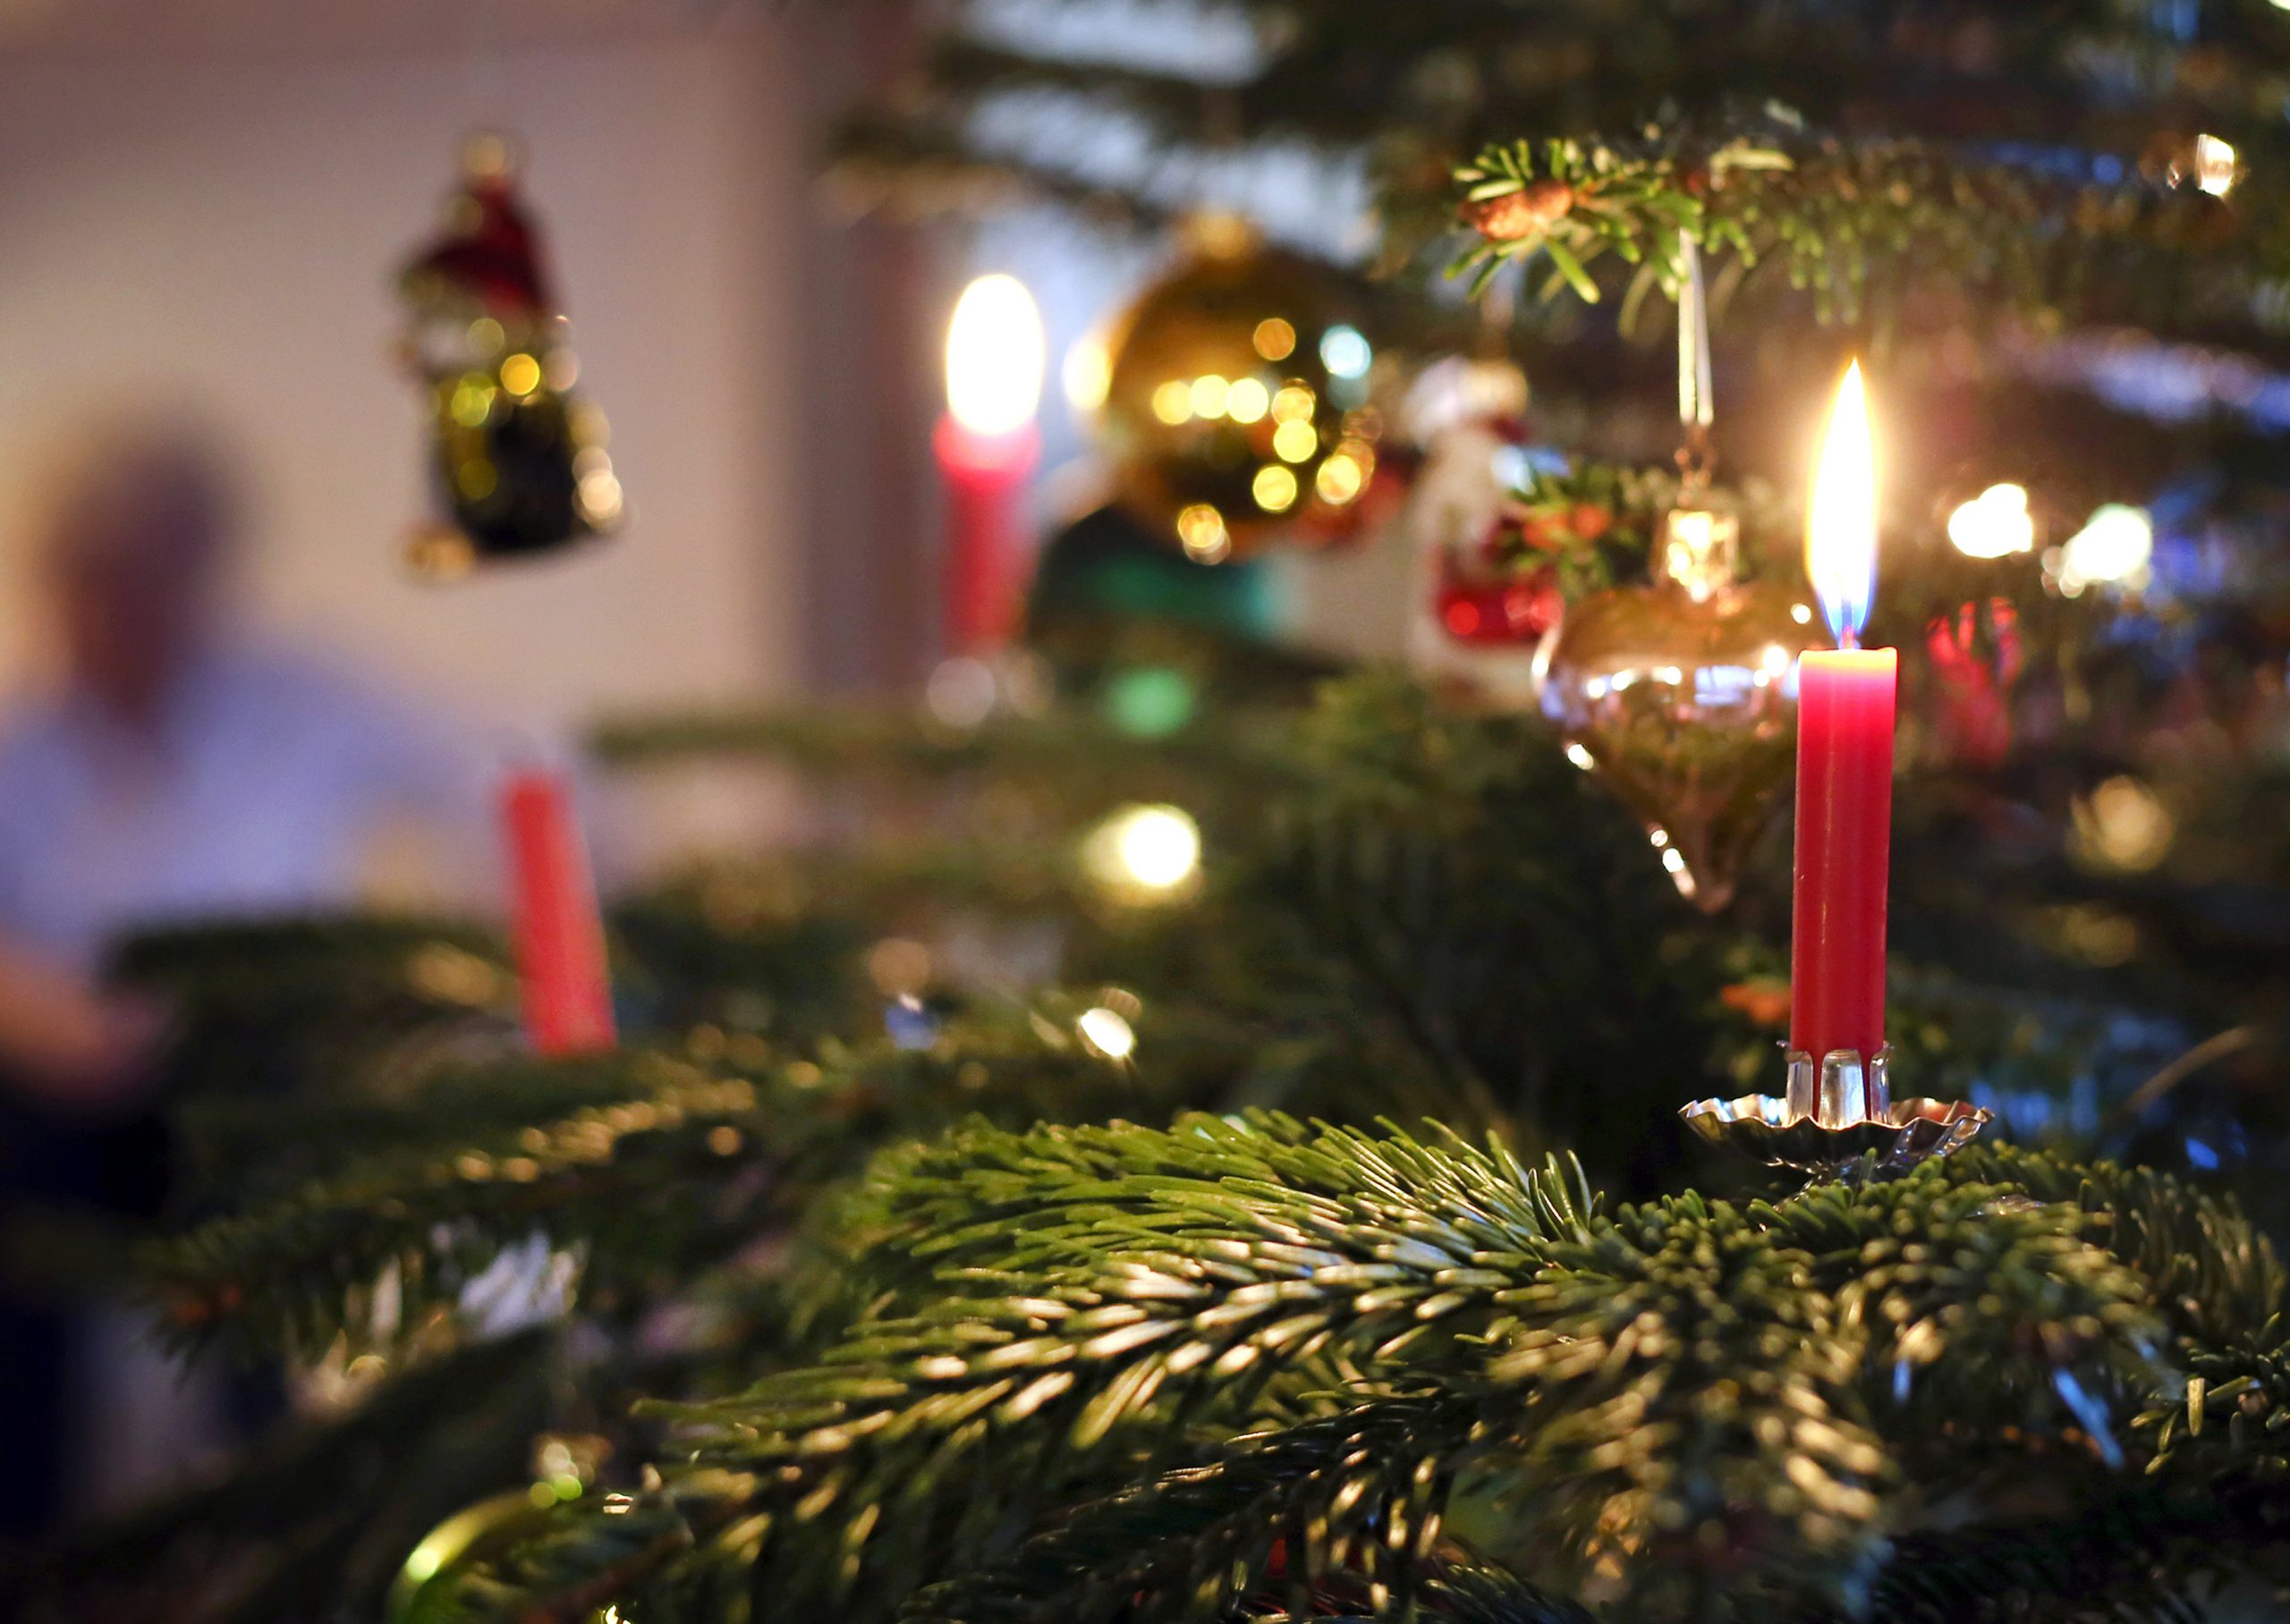 Kerzen brennen an einem festlich geschmückten Weihnachtsbaum.